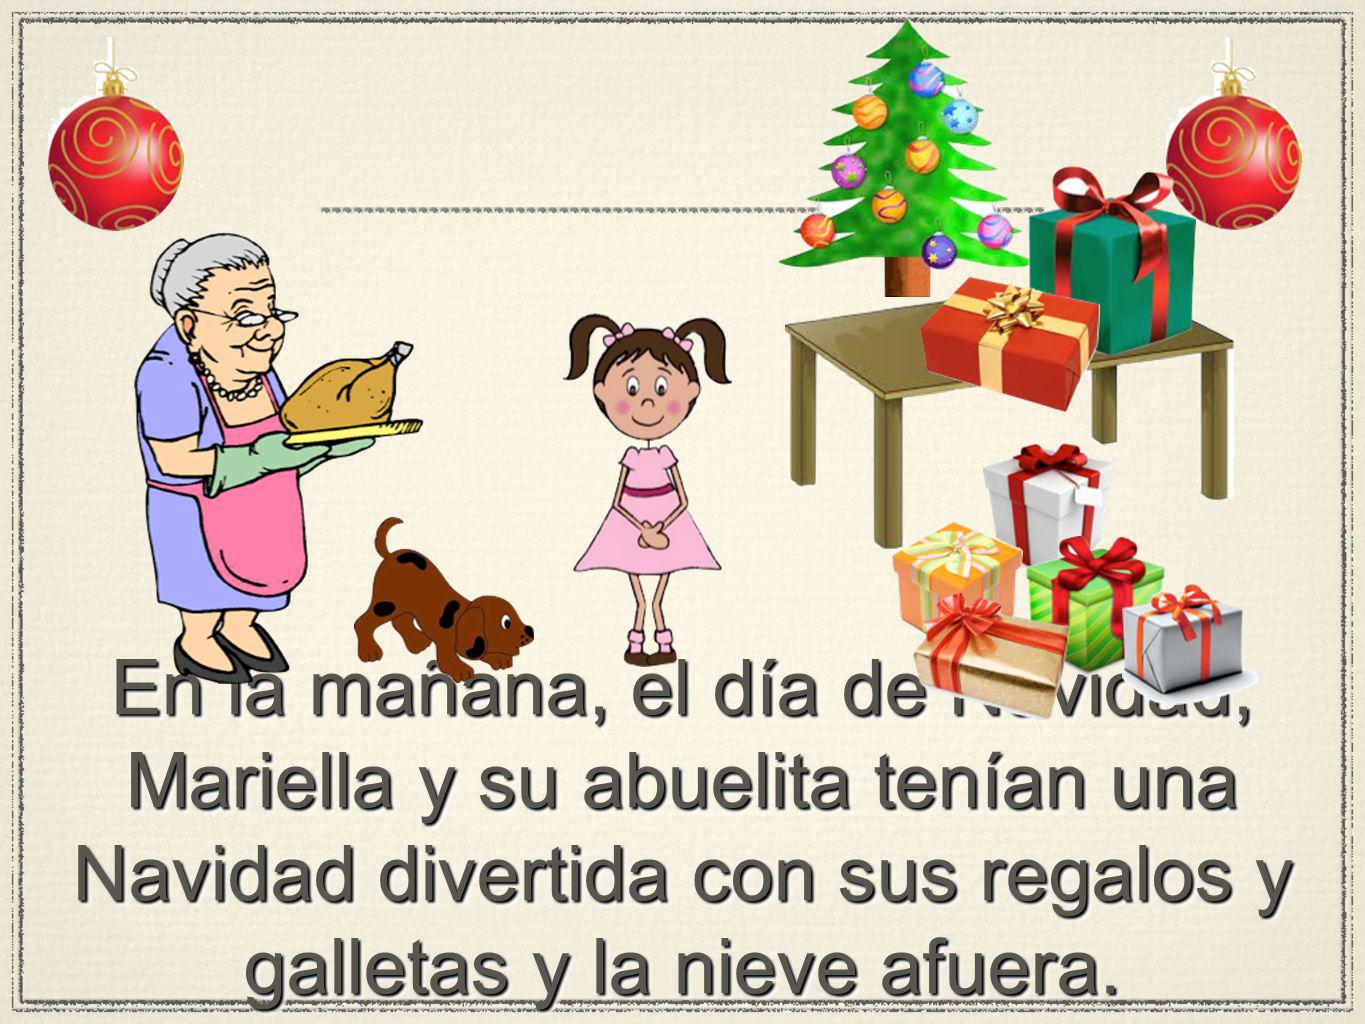 En la mañana, el día de Navidad, Mariella y su abuelita tenían una Navidad divertida con sus regalos y galletas y la nieve afuera.